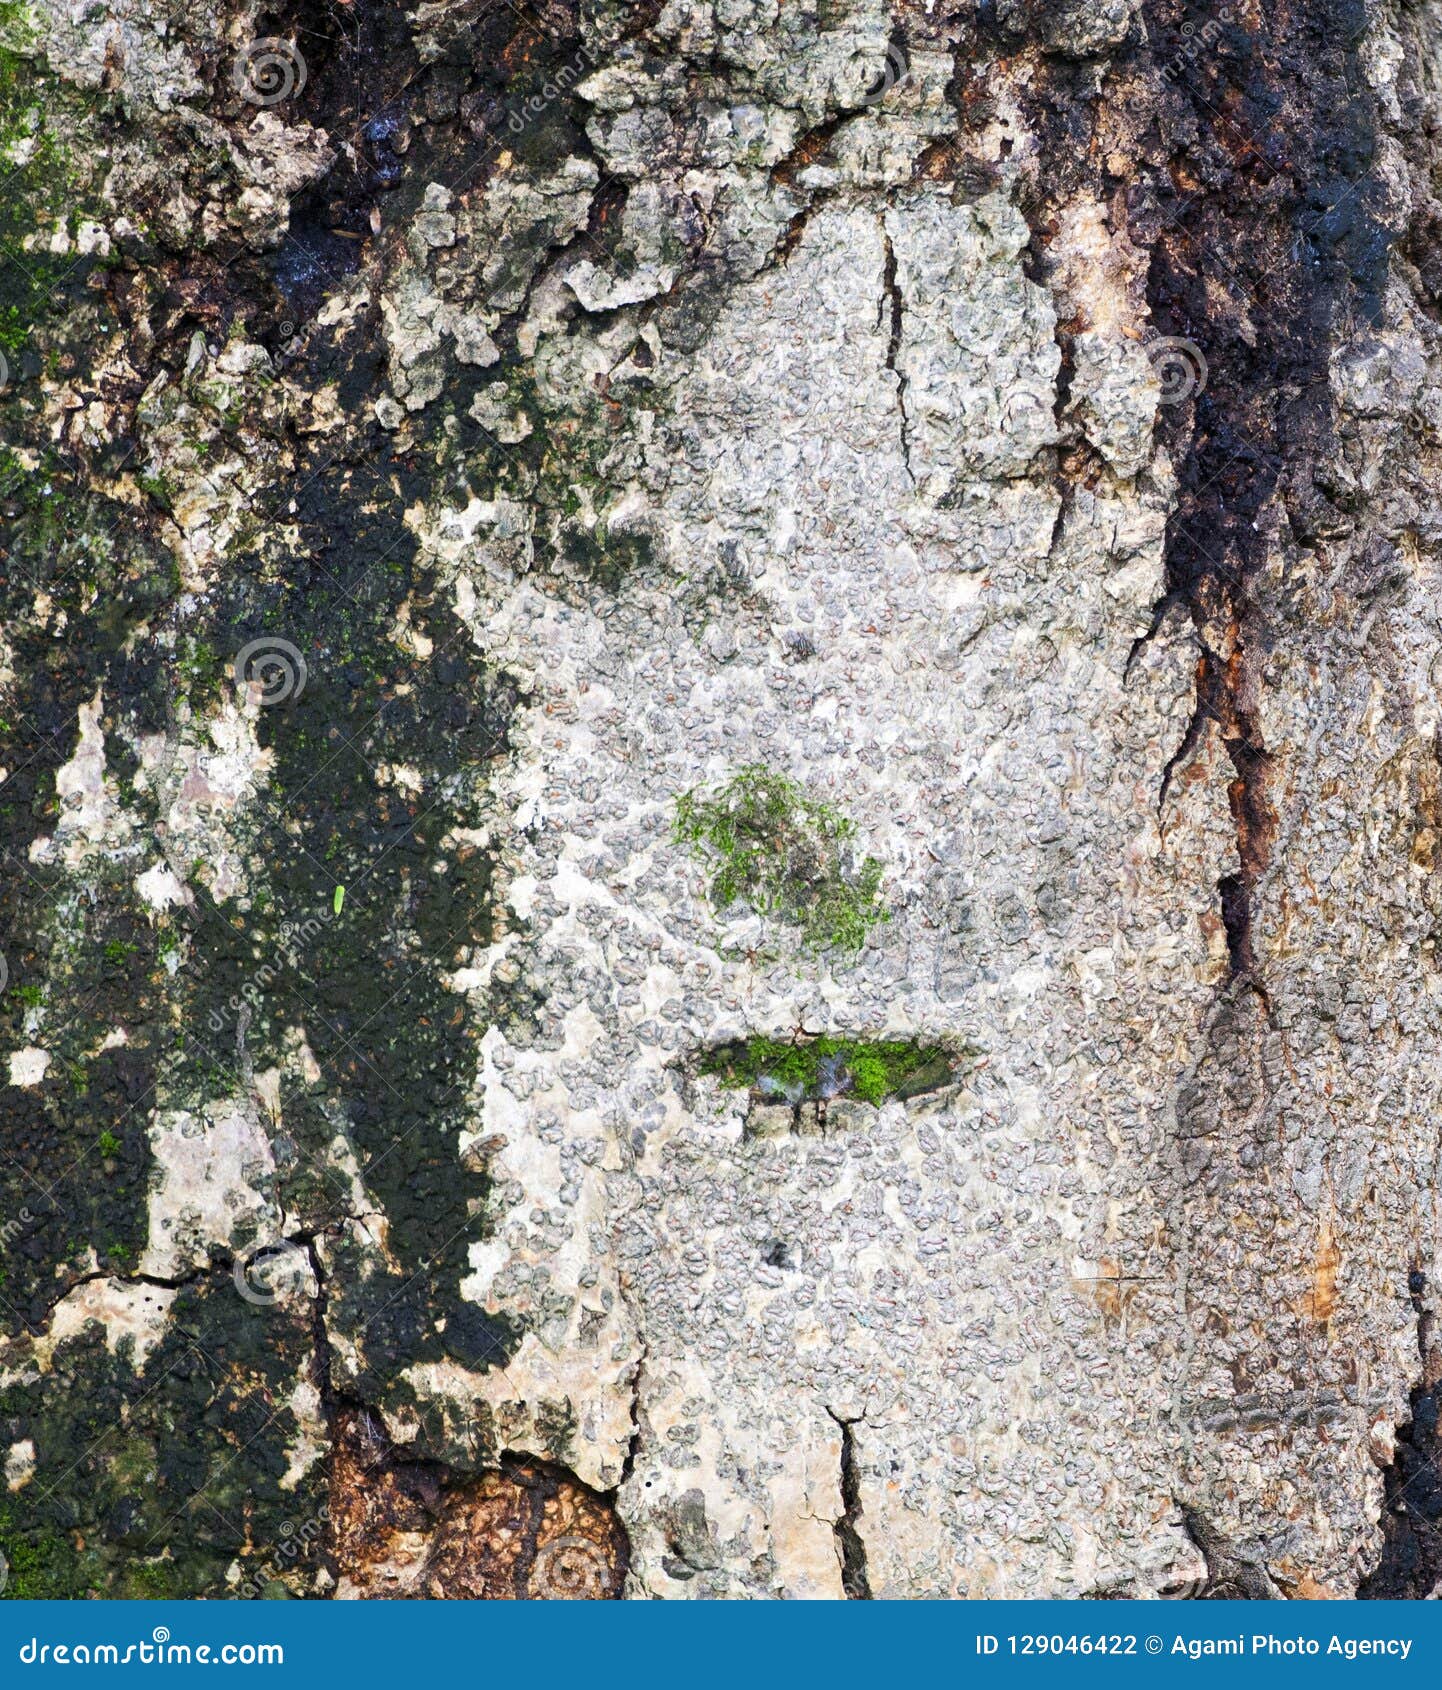 boomschors met mos; treetrunk with moss; minca, colombia